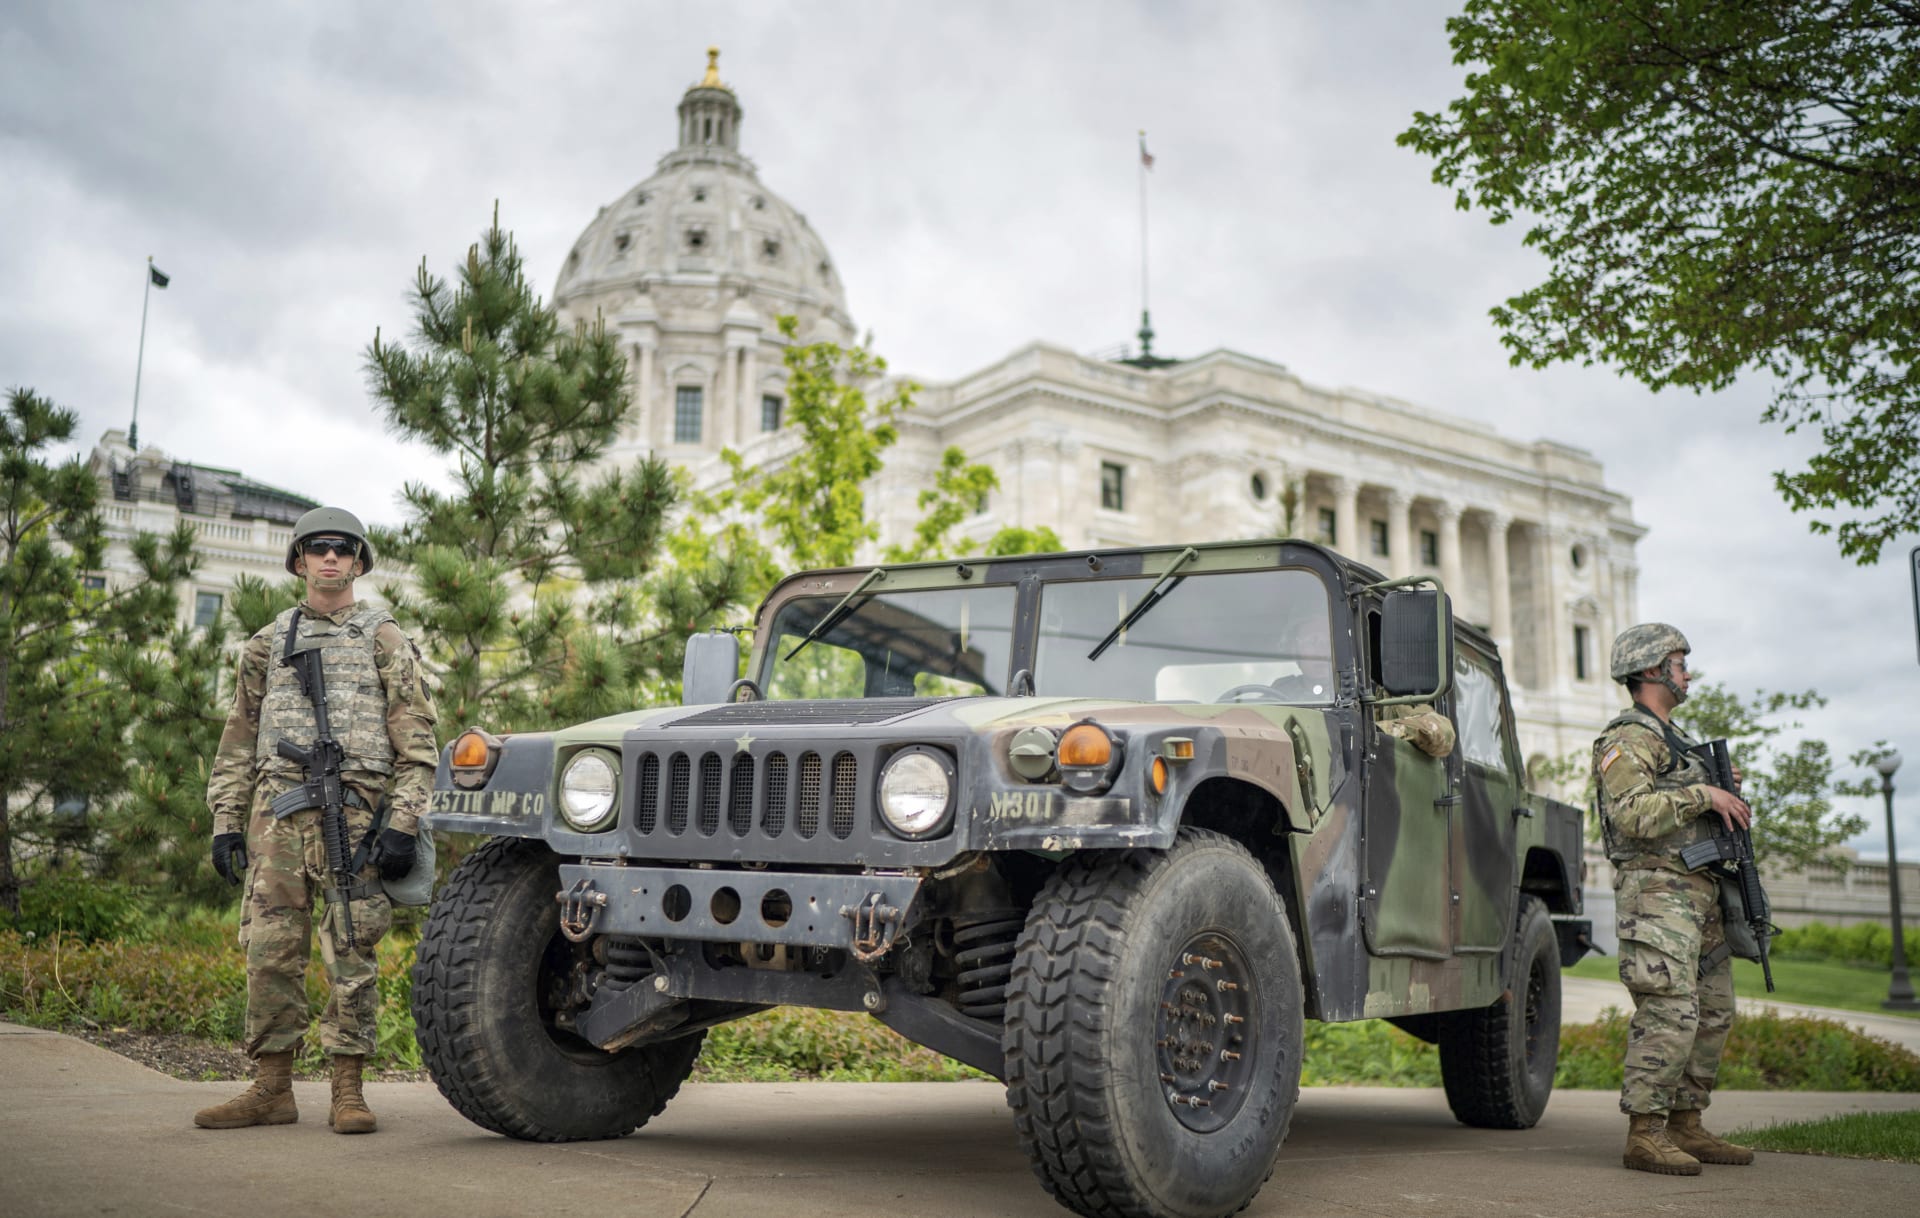 Vojáci Národní gardy hlídkují před Capitolen v hlavním městě amerického státu Minnesota v St. Paul.